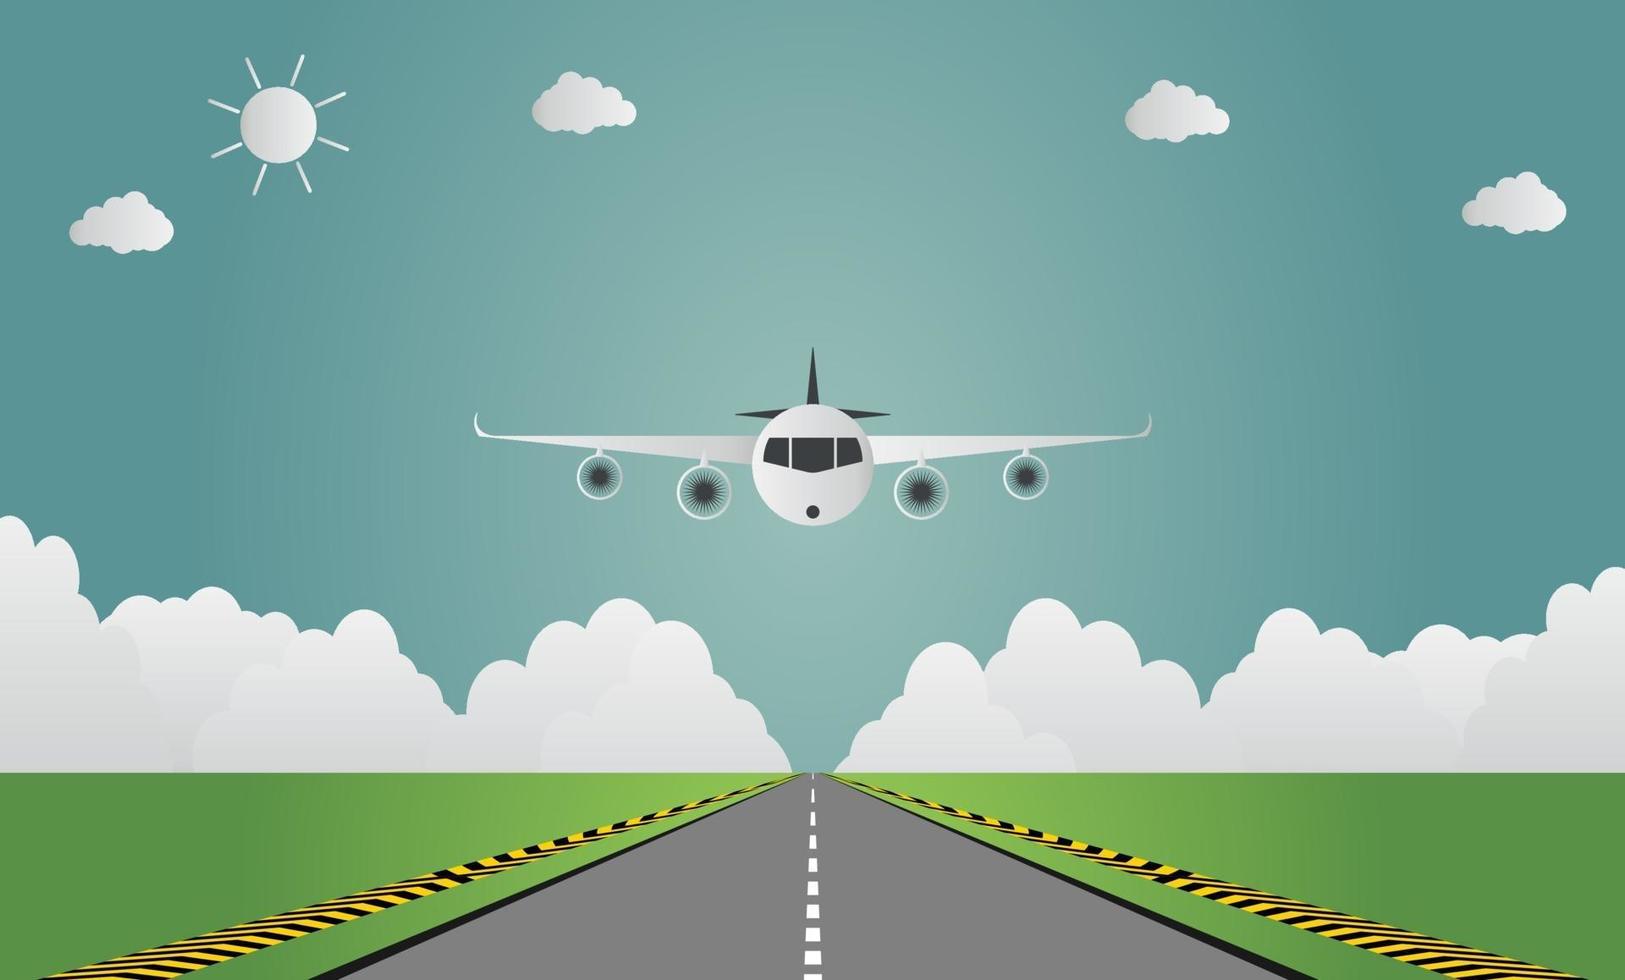 avion atterrit sur l'aéroport sur la piste un avion atterrissant ou décollant illustration vectorielle vecteur